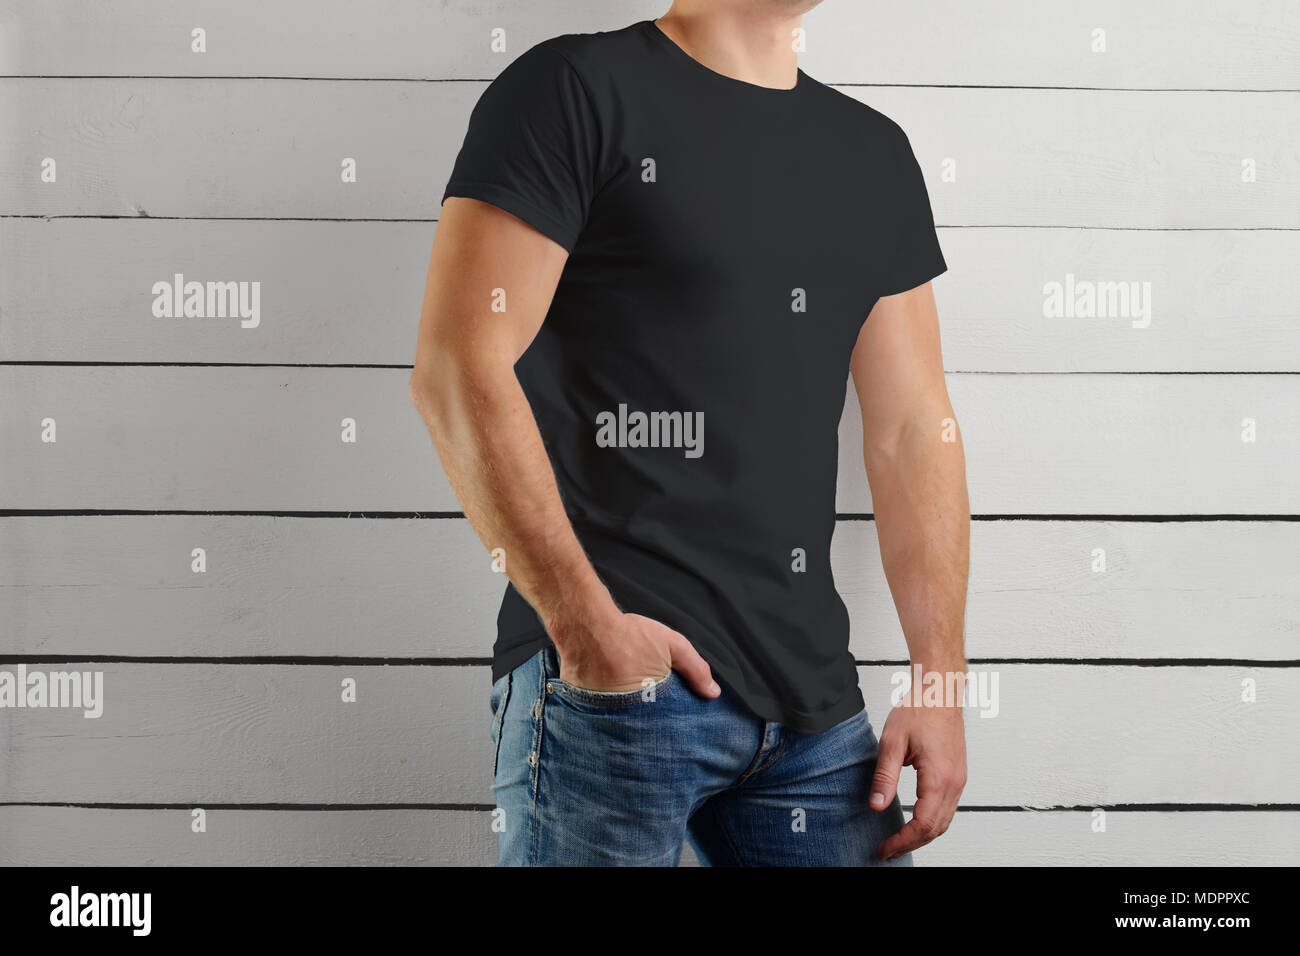 Mockup von einem schwarzen T-Shirt auf einem starken Kerl steht eine halbe Umdrehung auf einer hölzernen Hintergrund. Vorlage bereit, in Ihr Design zu verwenden. Stockfoto